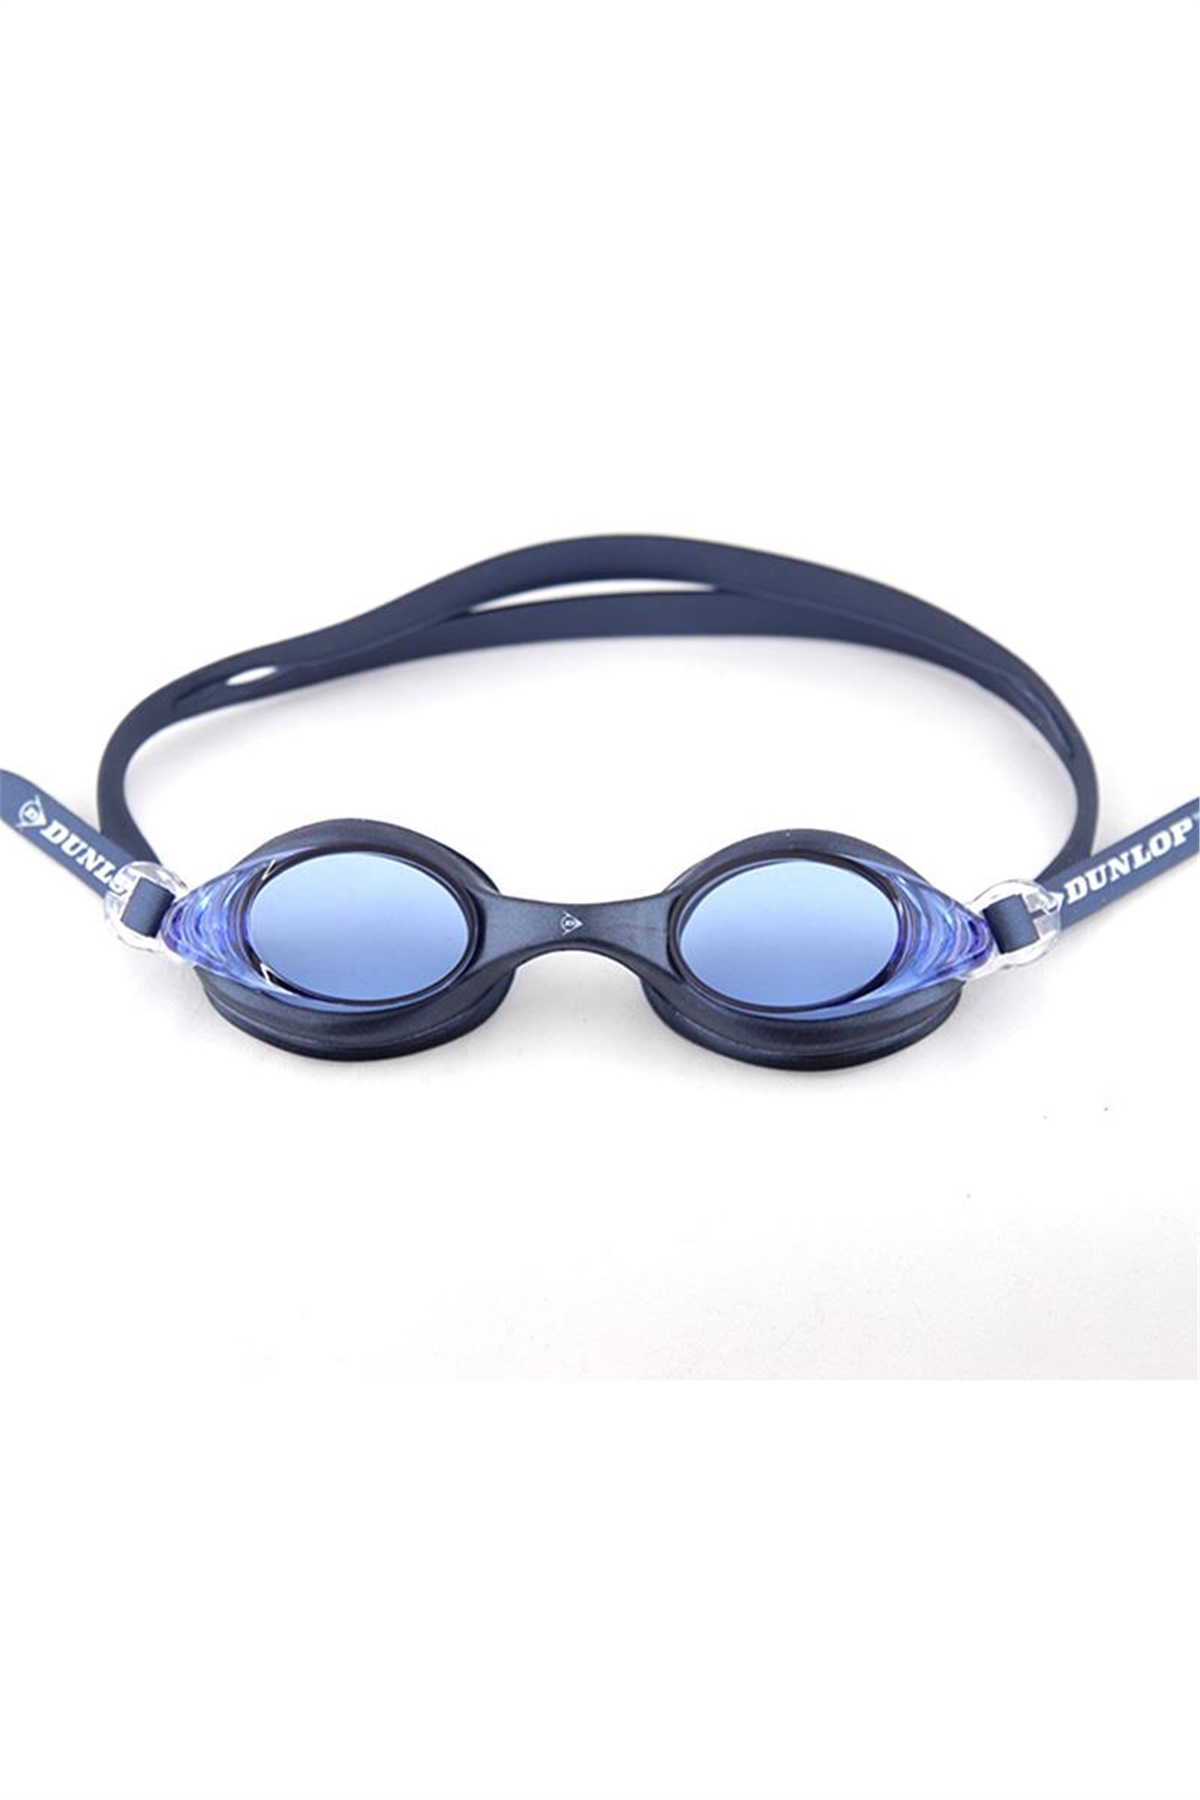 Dunlop Yüzücü Gözlüğü - Lacivert